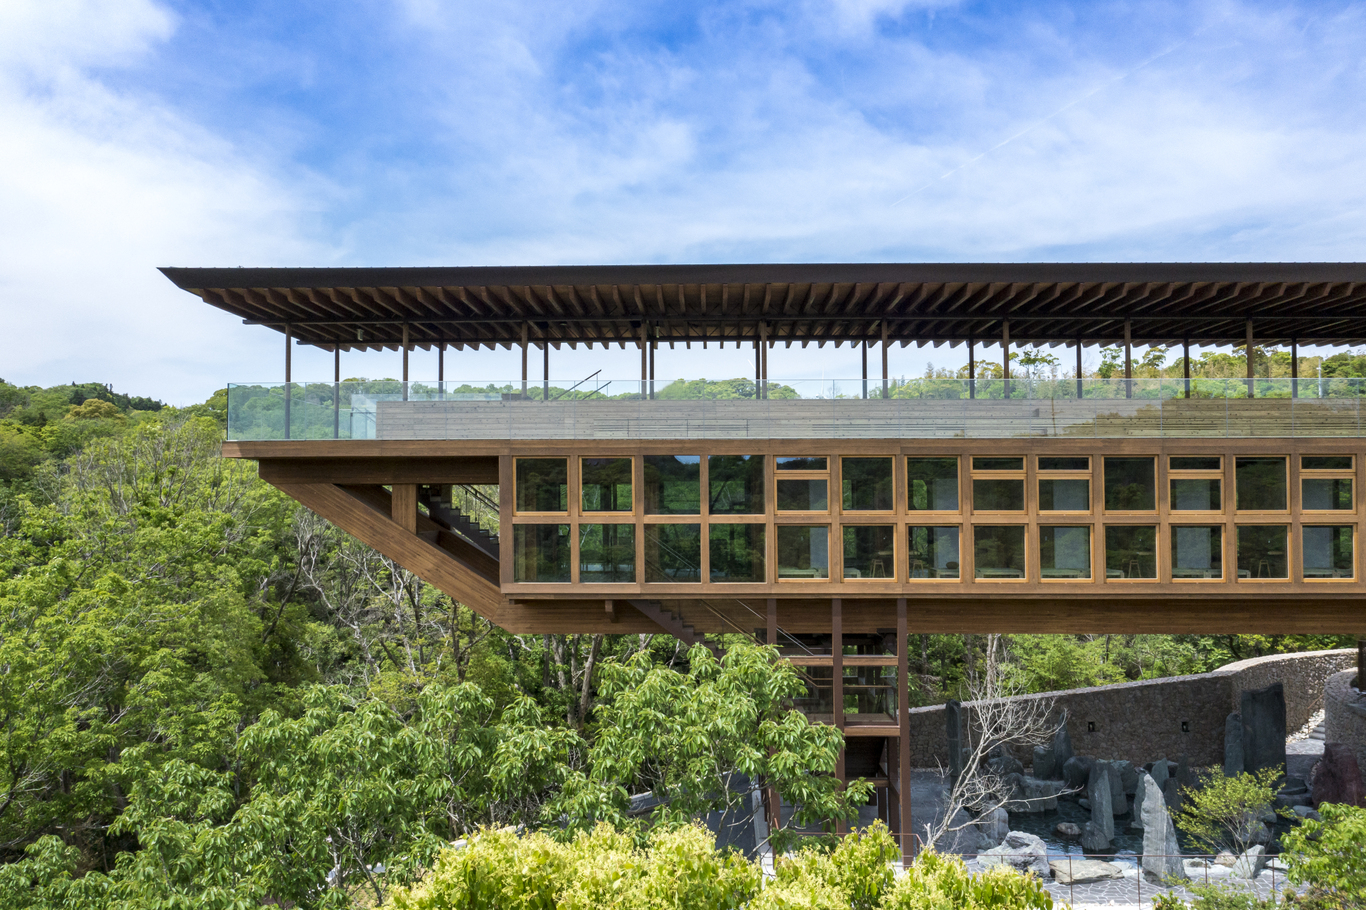 整個禪坊靖寧以兩個固定基座和懸 臂式設計，營造出在自然中尋求平衡的建築意象。